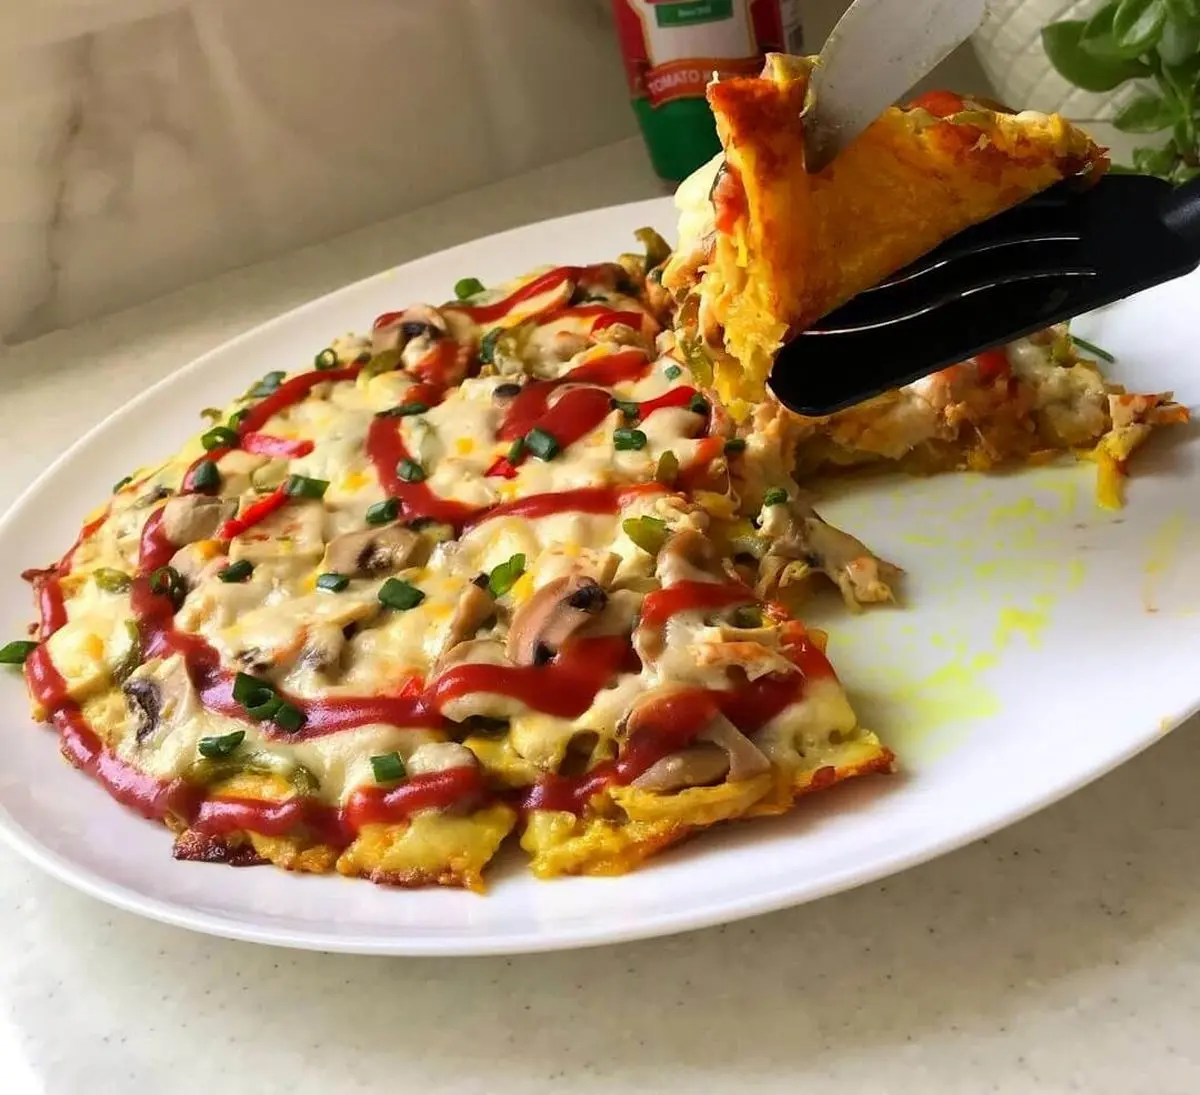 اگر از پیتزای معمولی خسته شدی، بیا اینو بجاش درست کن با هزینه کمتر! | طرز تهیه پیتزا سیب زمینی خوشمزه و فوری در 20 دقیقه! + ویدئو